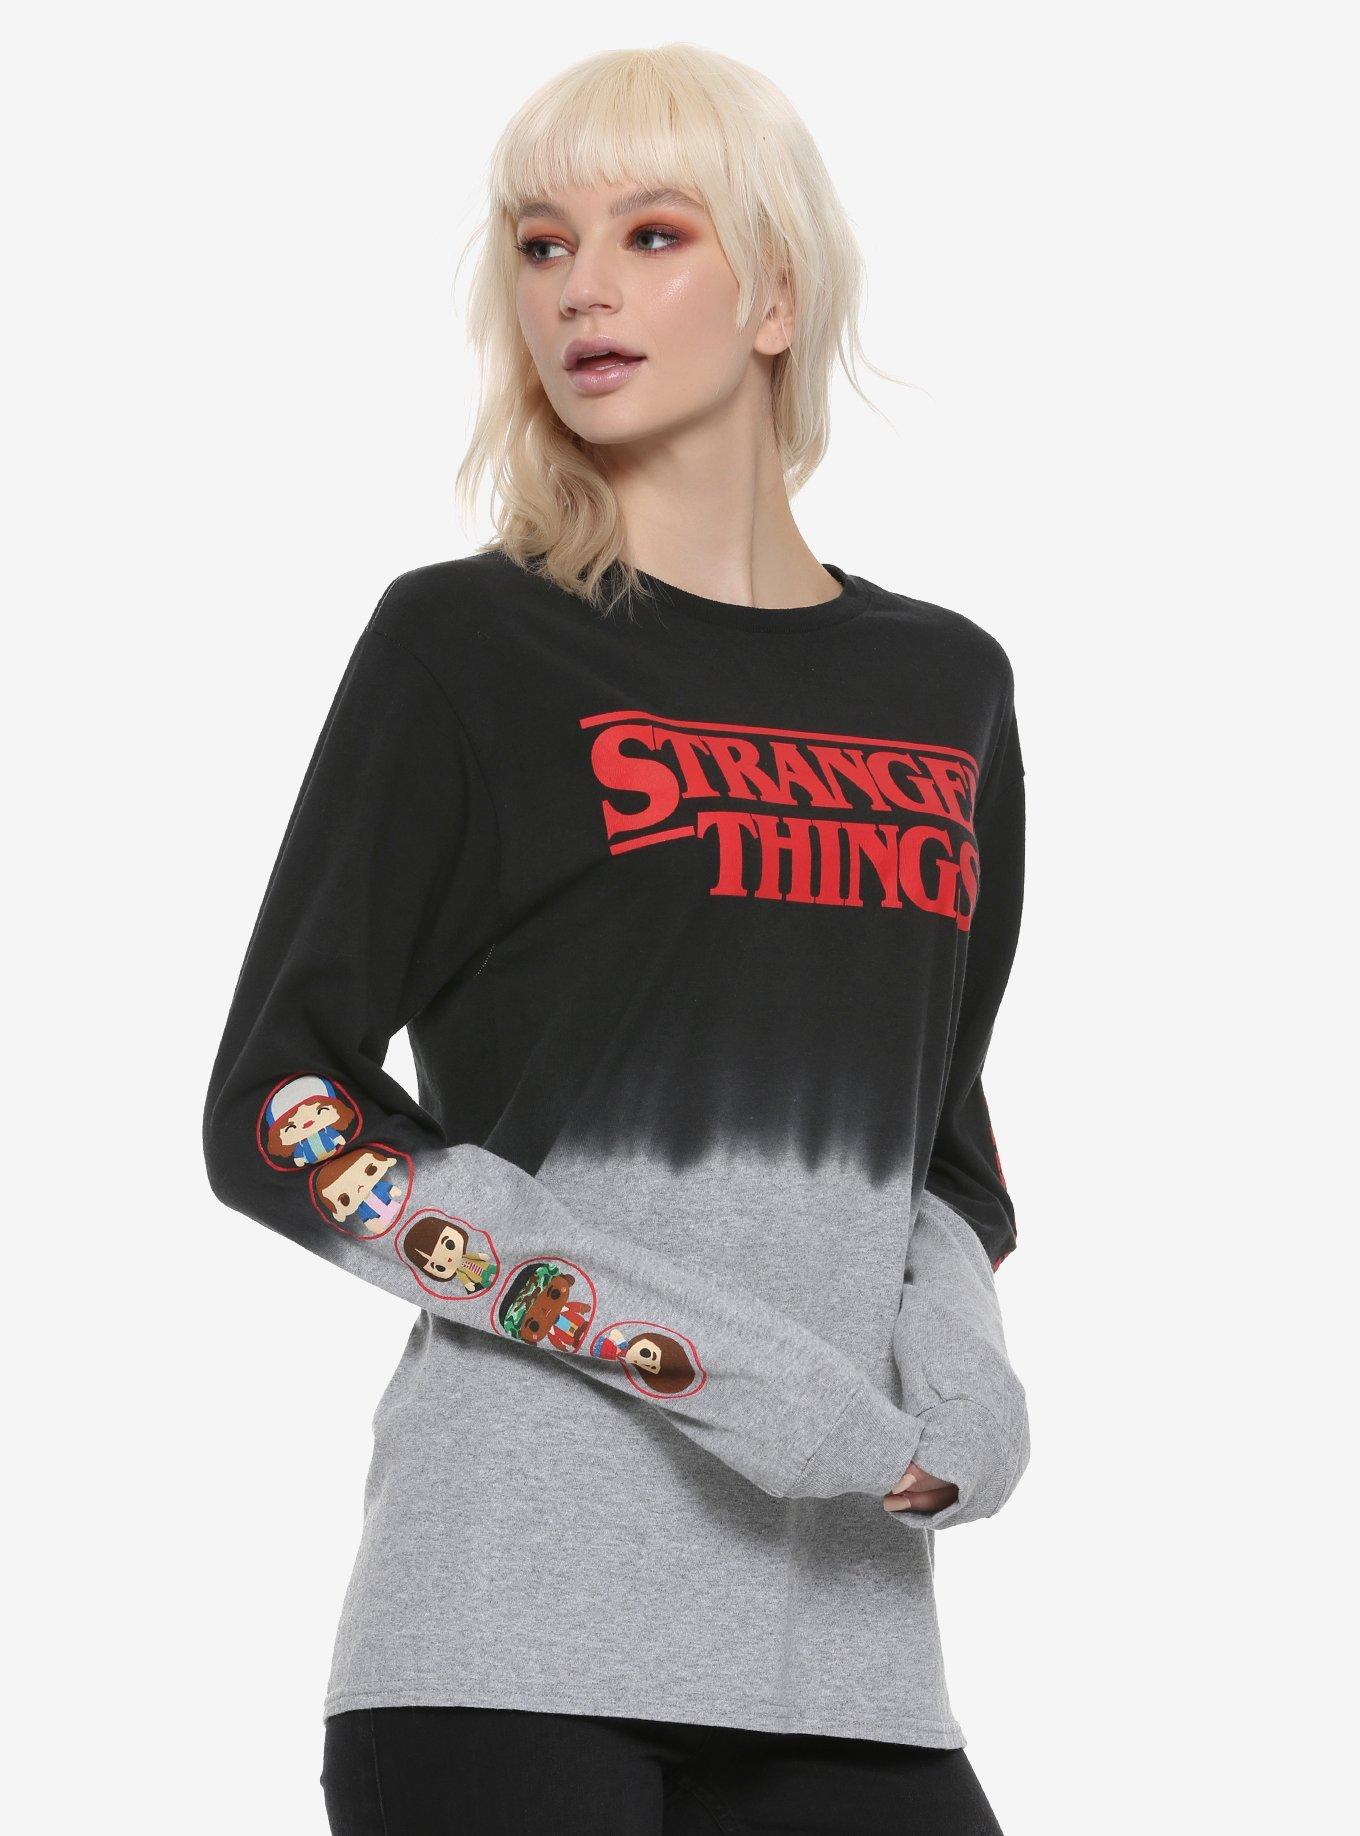 Stranger Things Chibi Dip Dye Girls Long-Sleeve T-Shirt | Hot Topic